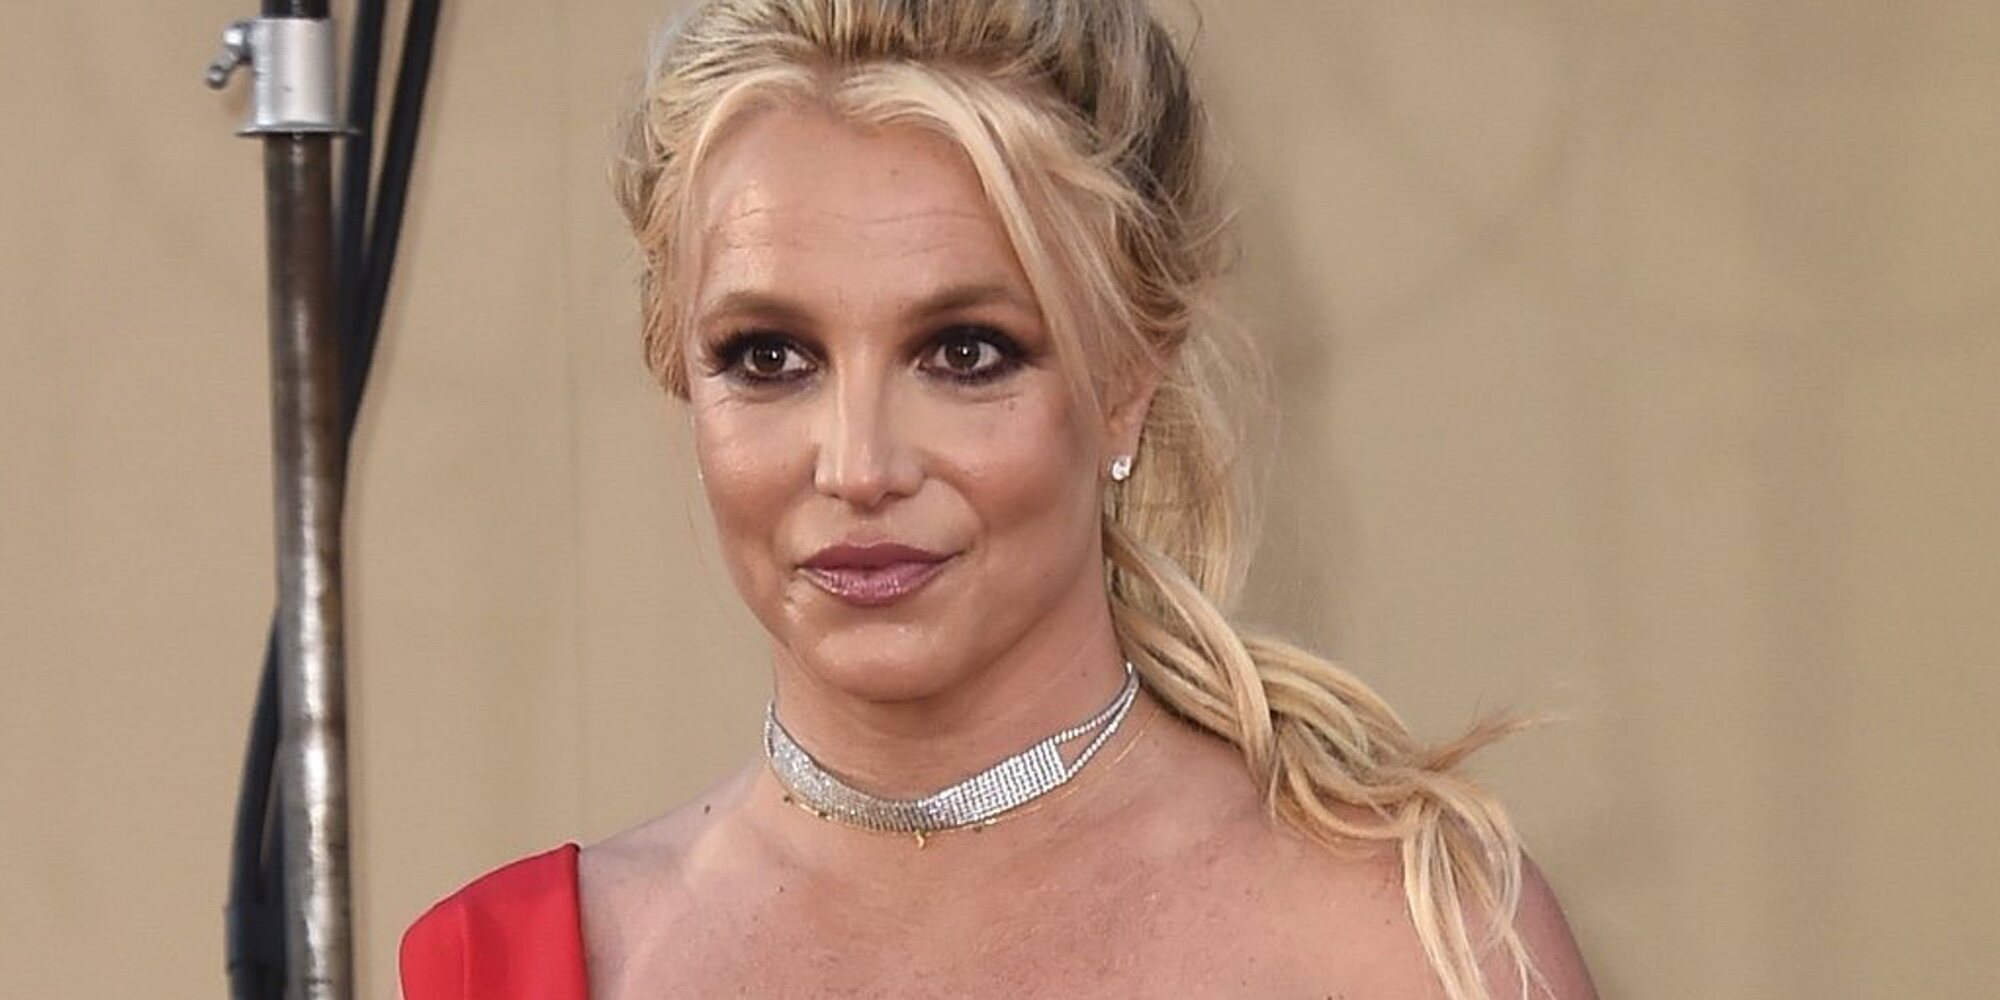 Britney Spears quiere recuperar su vida y volver a ser madre: "Señoría, mi padre debería estar en prisión"